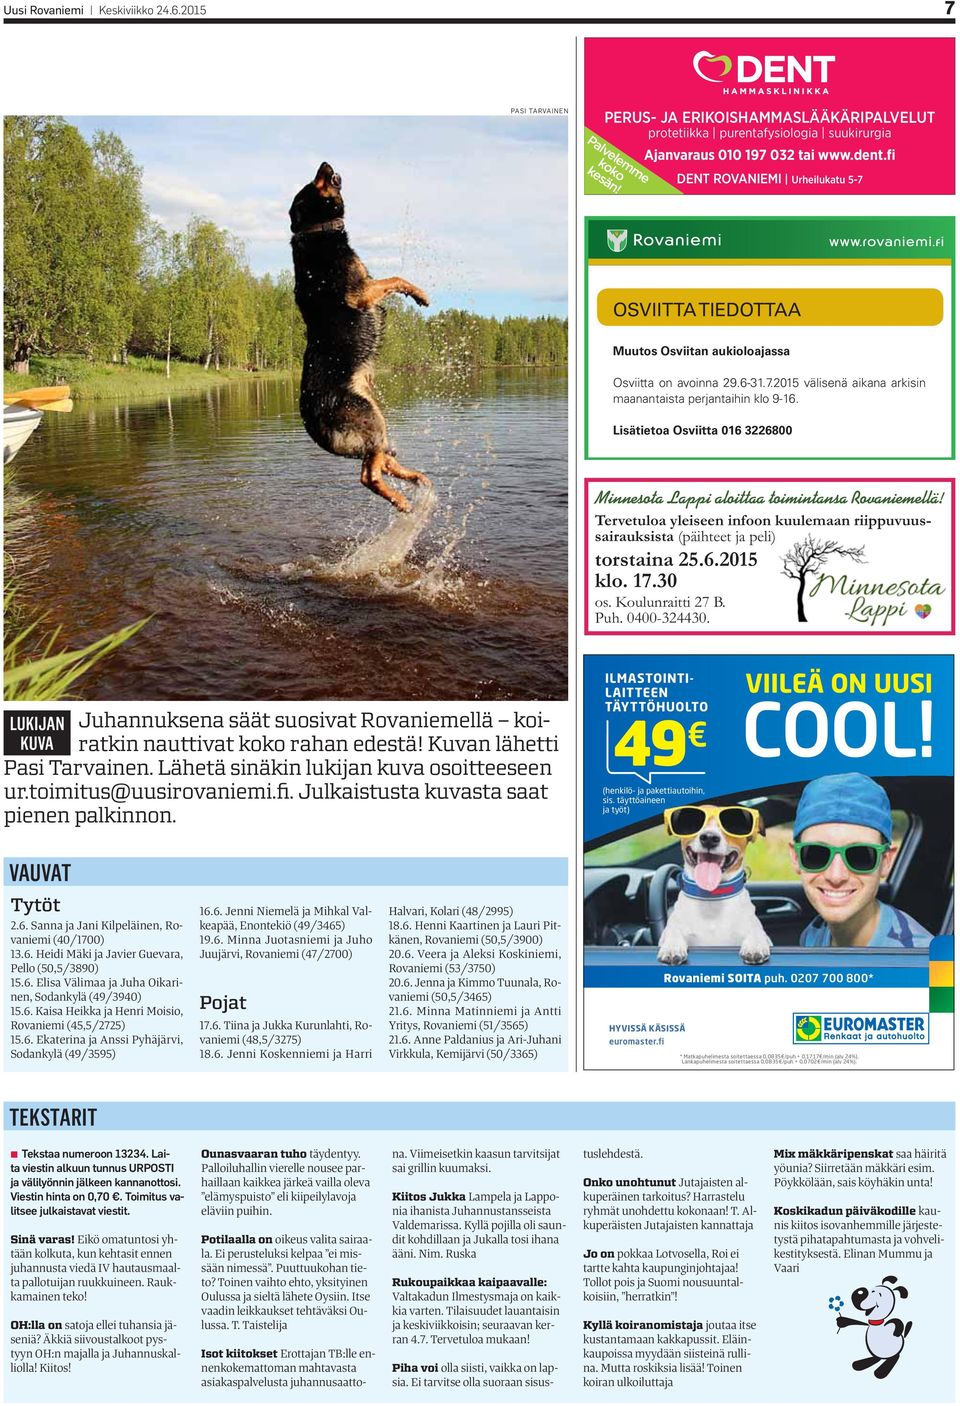 Lisätietoa Osviitta 016 3226800 Minnesota Lappi aloittaa toimintansa Rovaniemellä! Tervetuloa yleiseen infoon kuulemaan riippuvuussairauksista (päihteet ja peli) torstaina 25.6.2015 klo. 17.30 os.